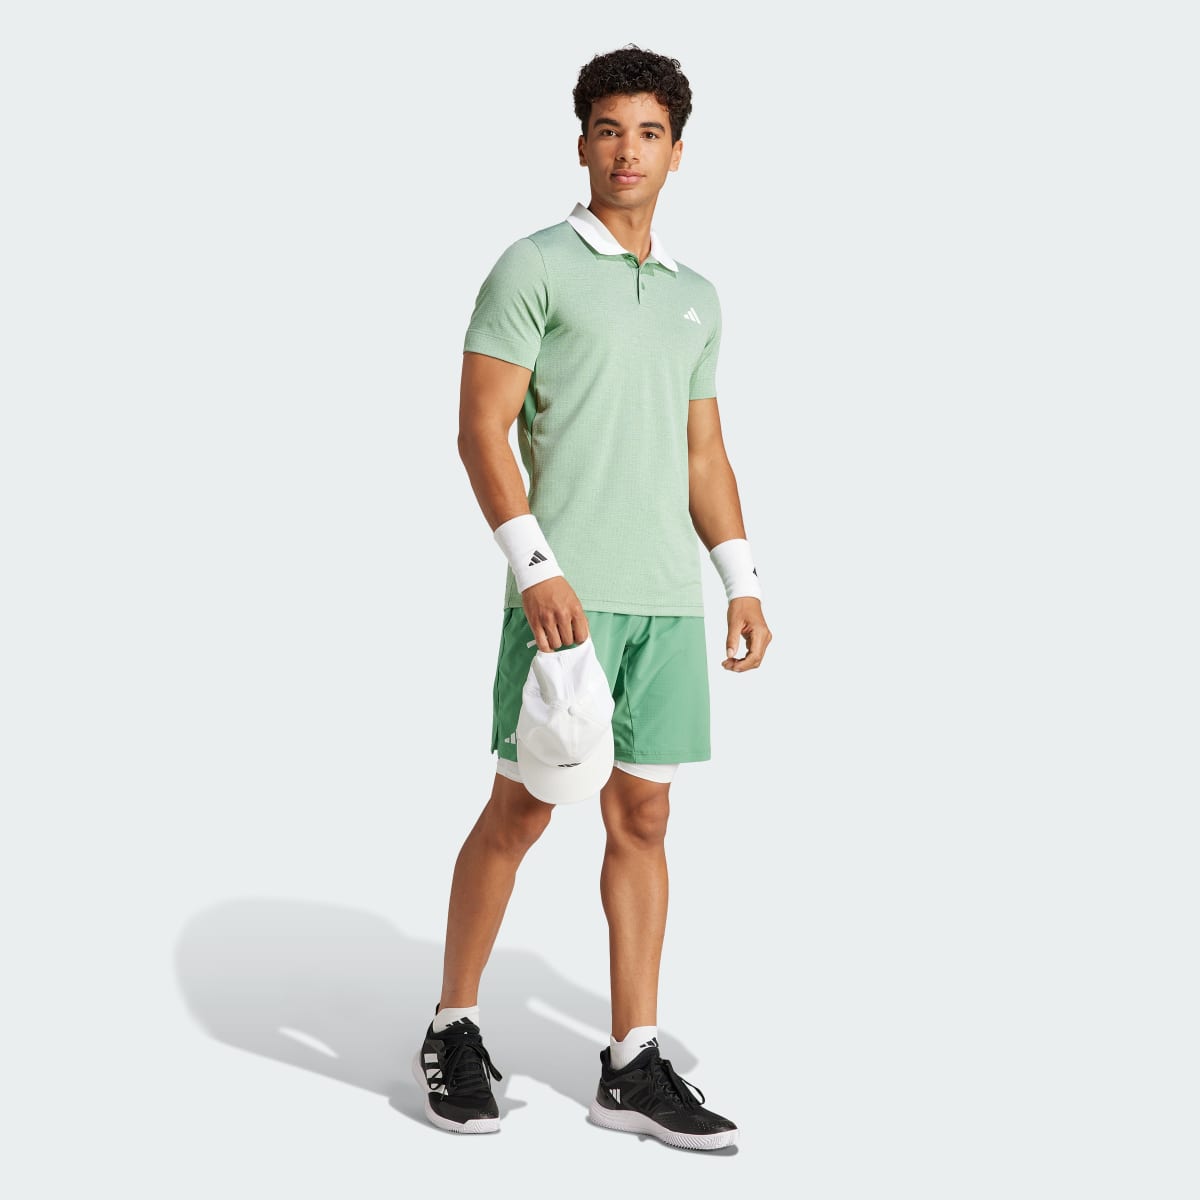 Adidas Tennis FreeLift Poloshirt. 6